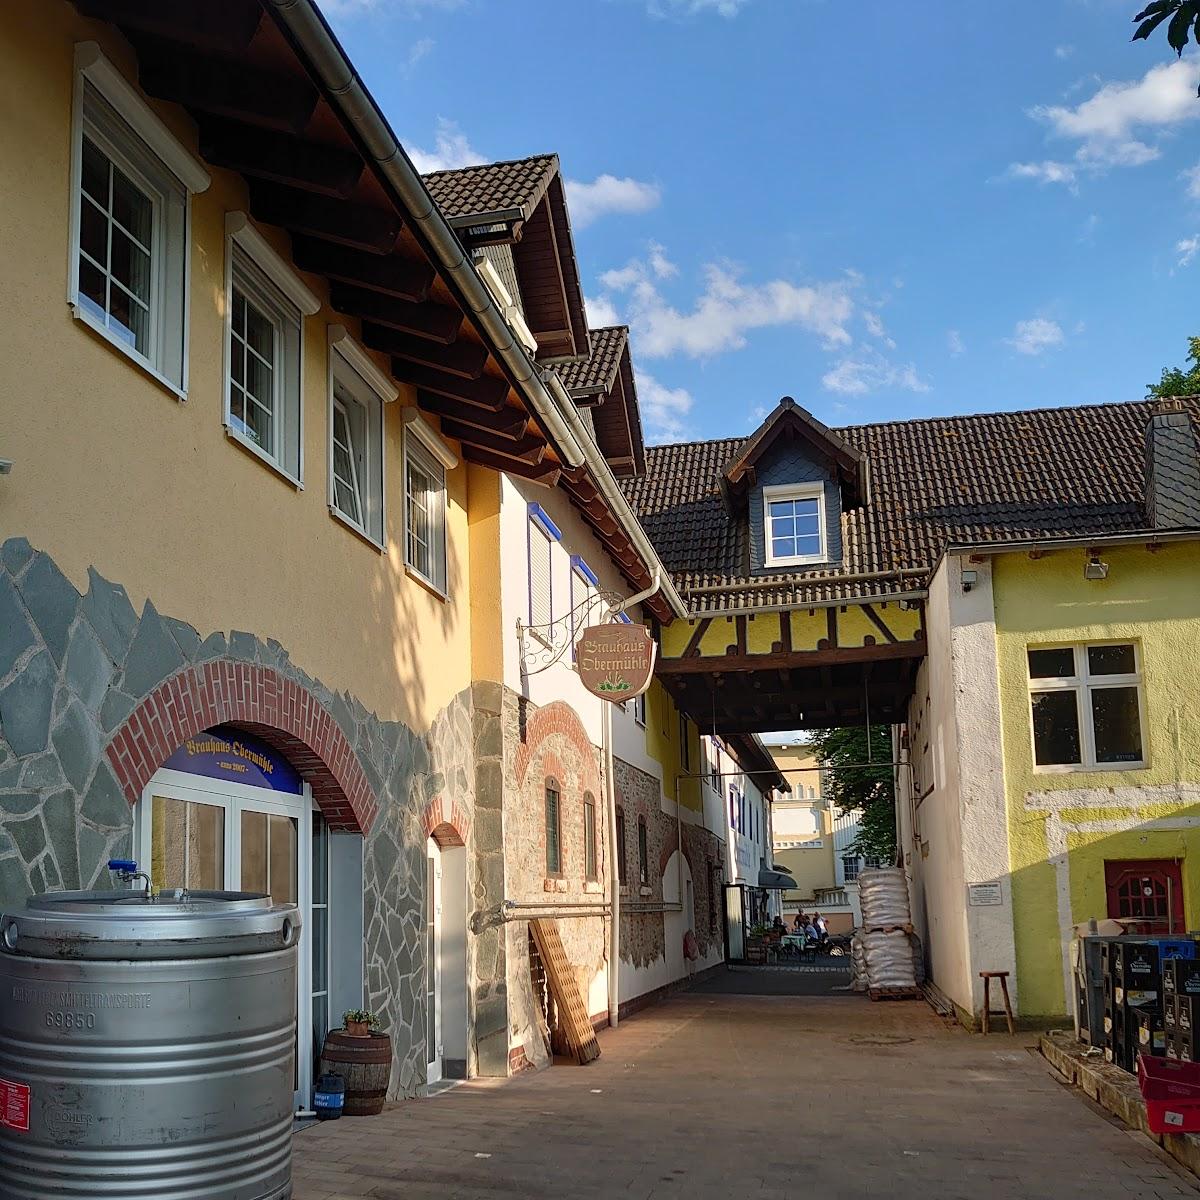 Restaurant "Brauhaus Obermühle" in Braunfels